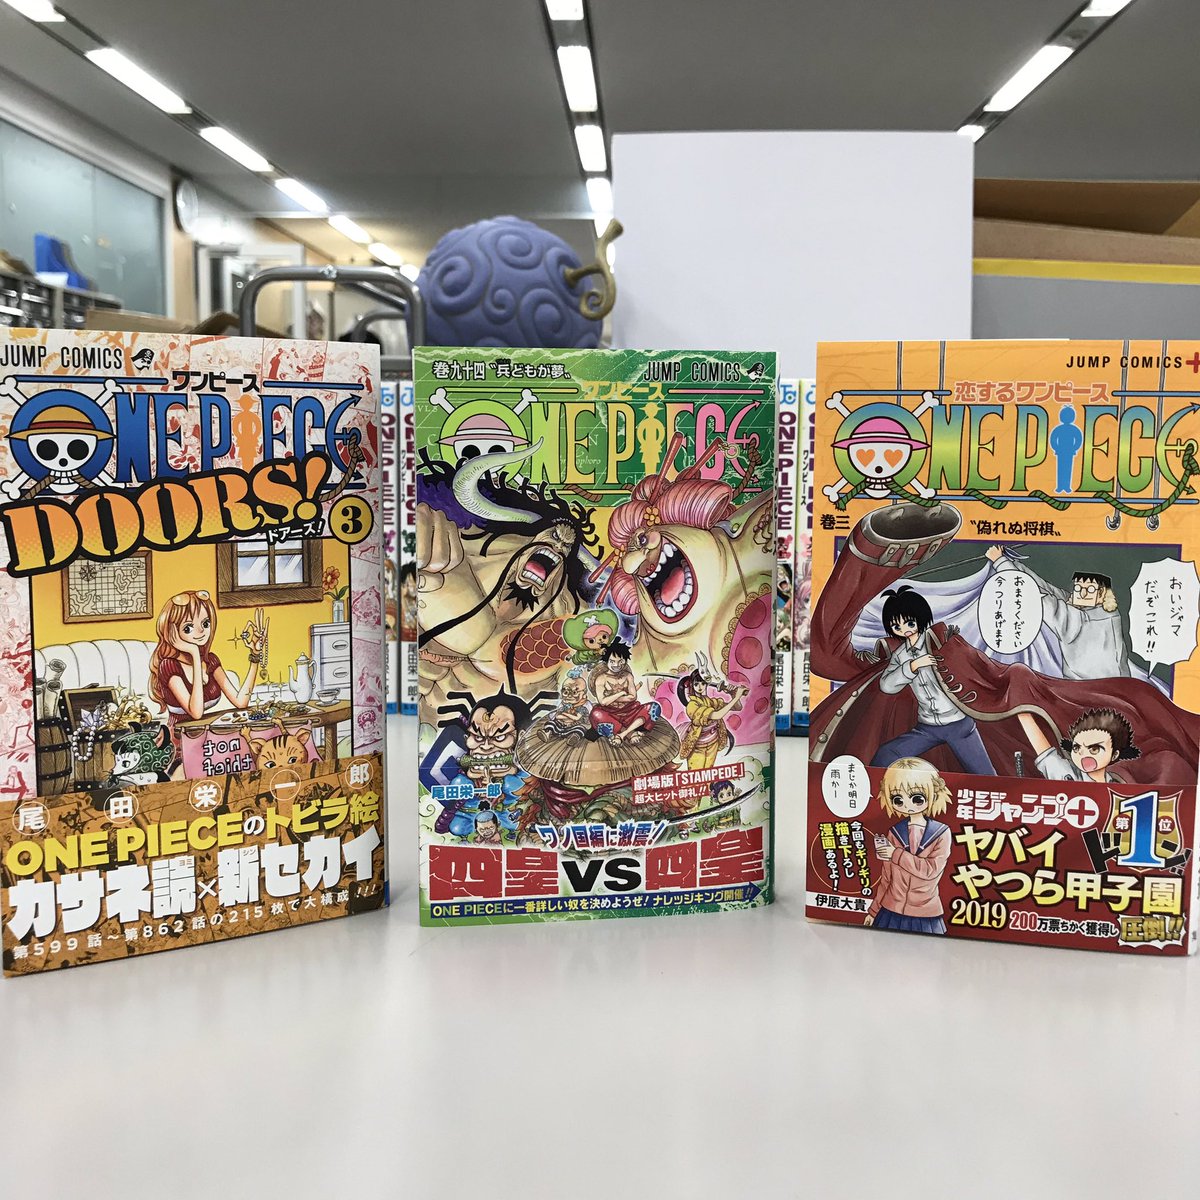 One Piece スタッフ 公式 Official 明日10 4 金 はone Piece 94巻の発売日 カバーから何やらヤベェ空気が漂ってる 楽しみすぎて寝れないね また 扉絵リクエストや表紙連載をまとめた Doors ３ とスピンオフギャグ漫画 恋する ワンピース